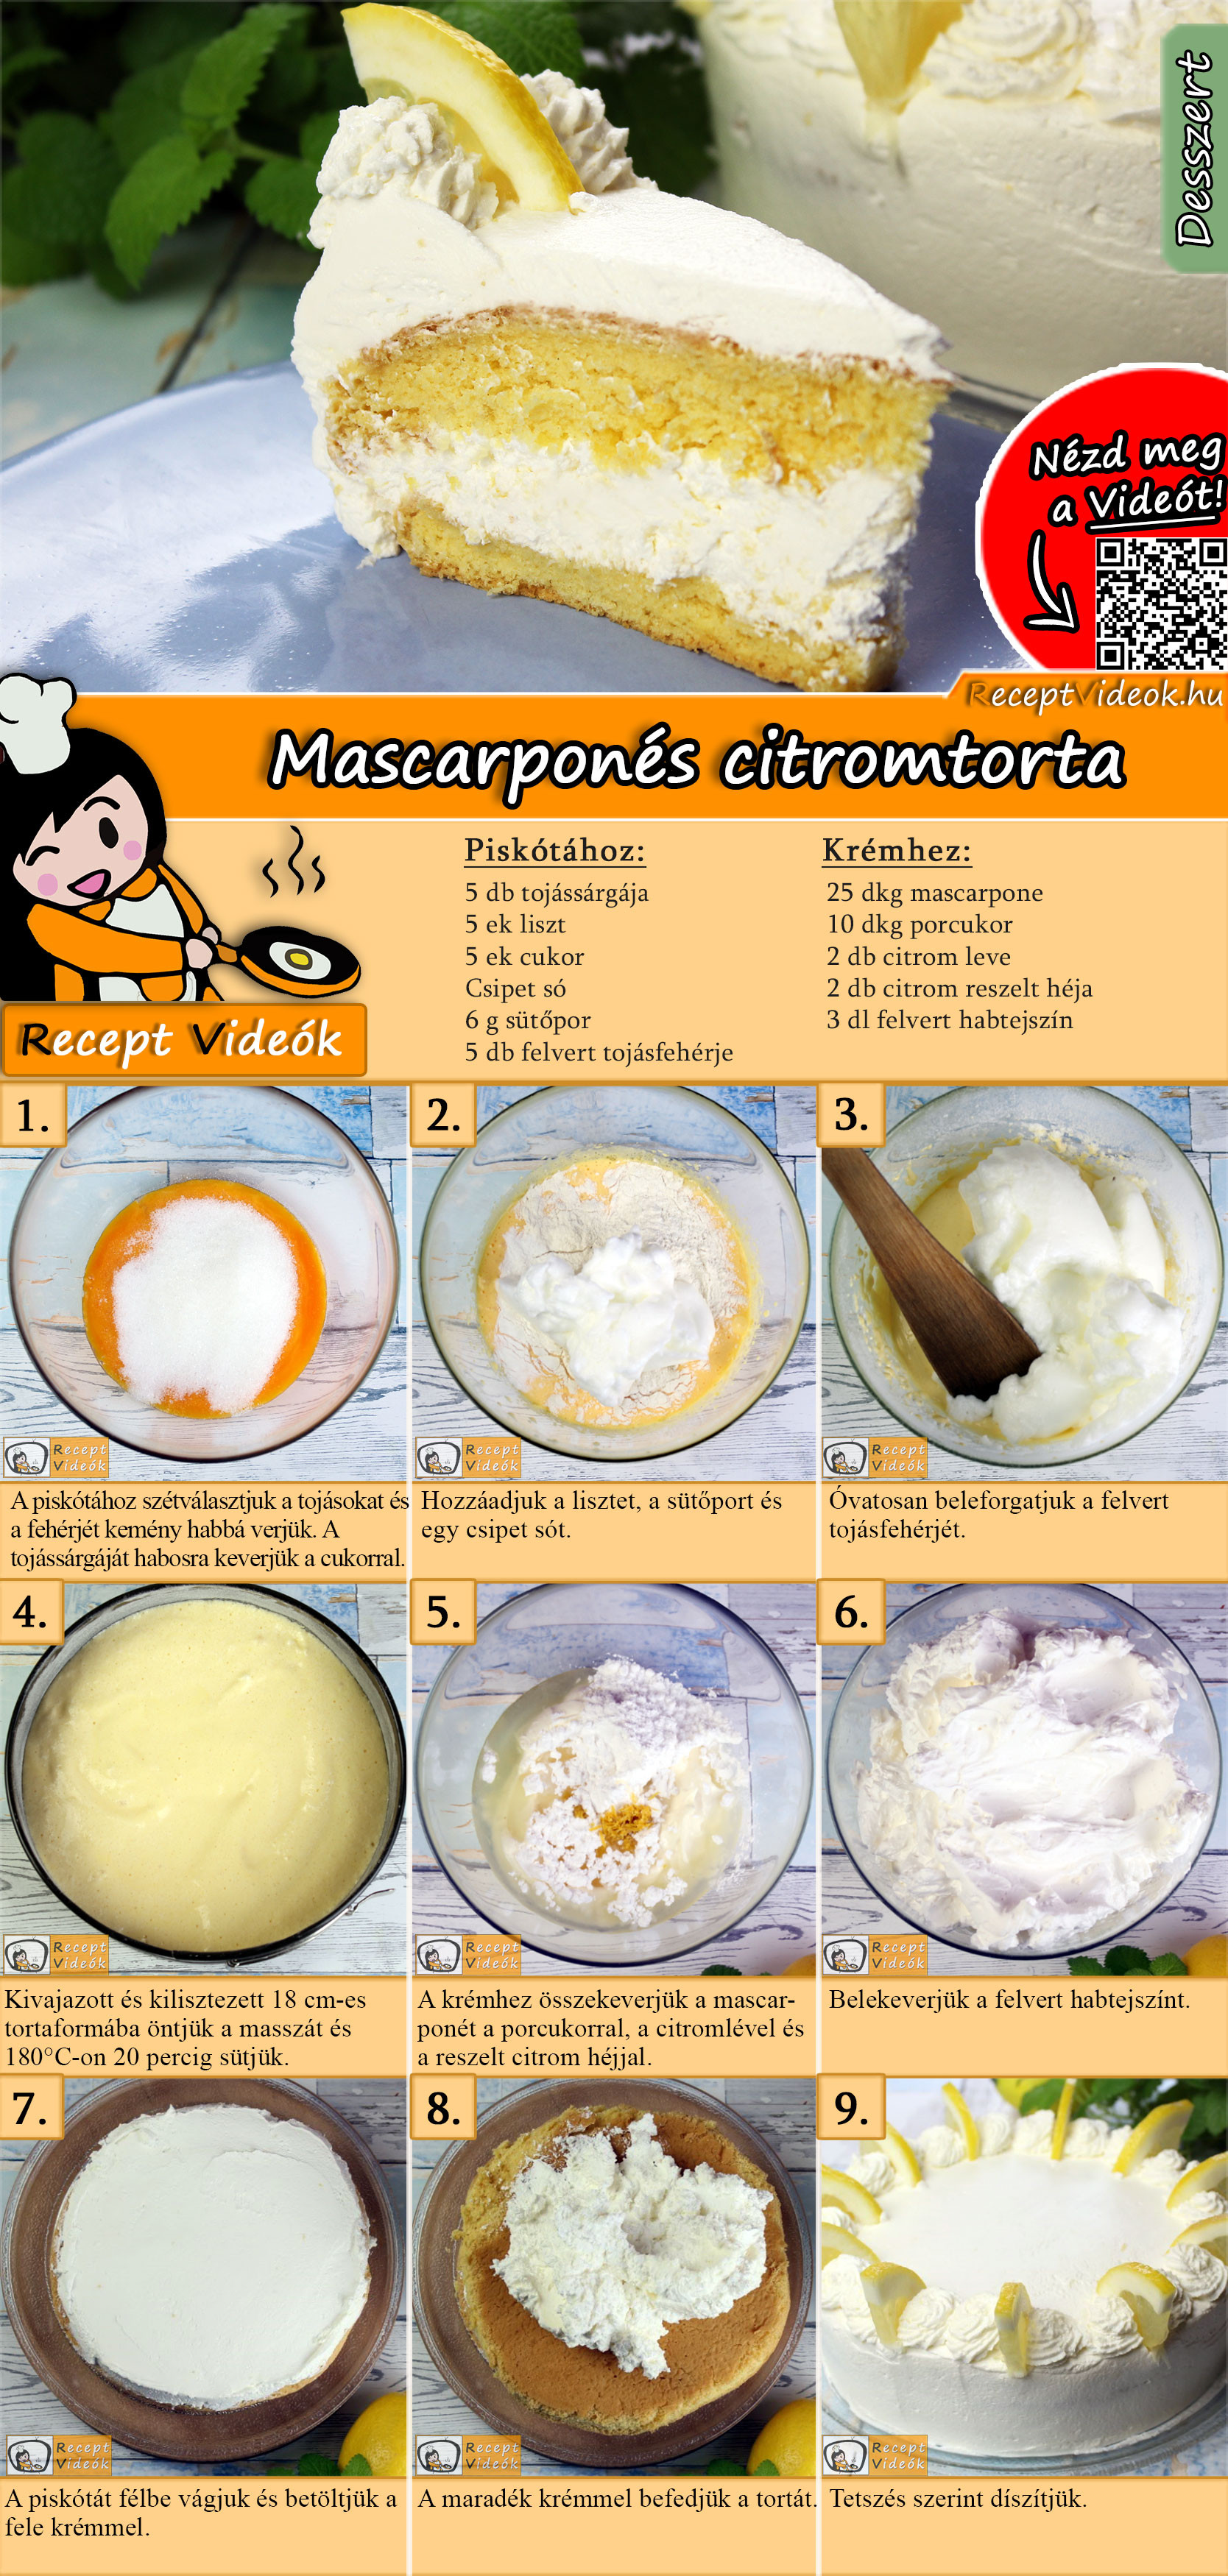 Mascarponés citromtorta recept elkészítése videóval